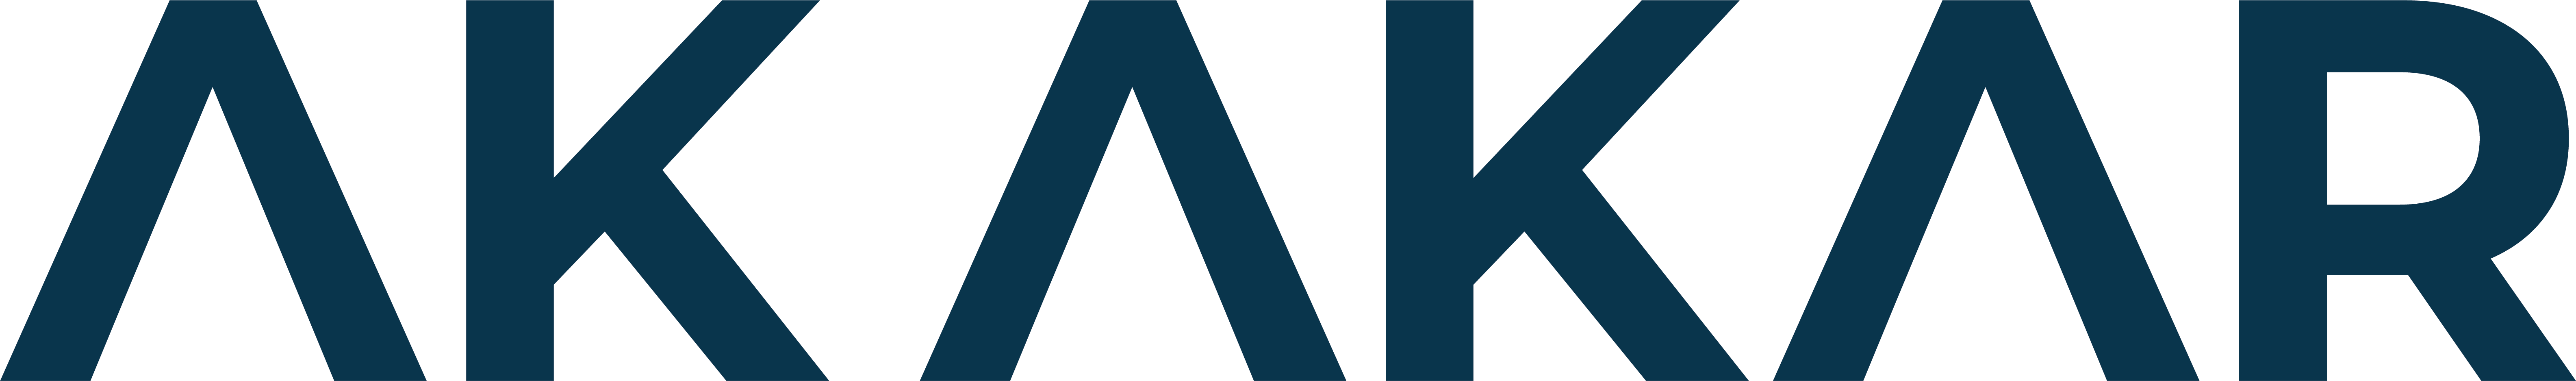 Akakar Web Logo@4x